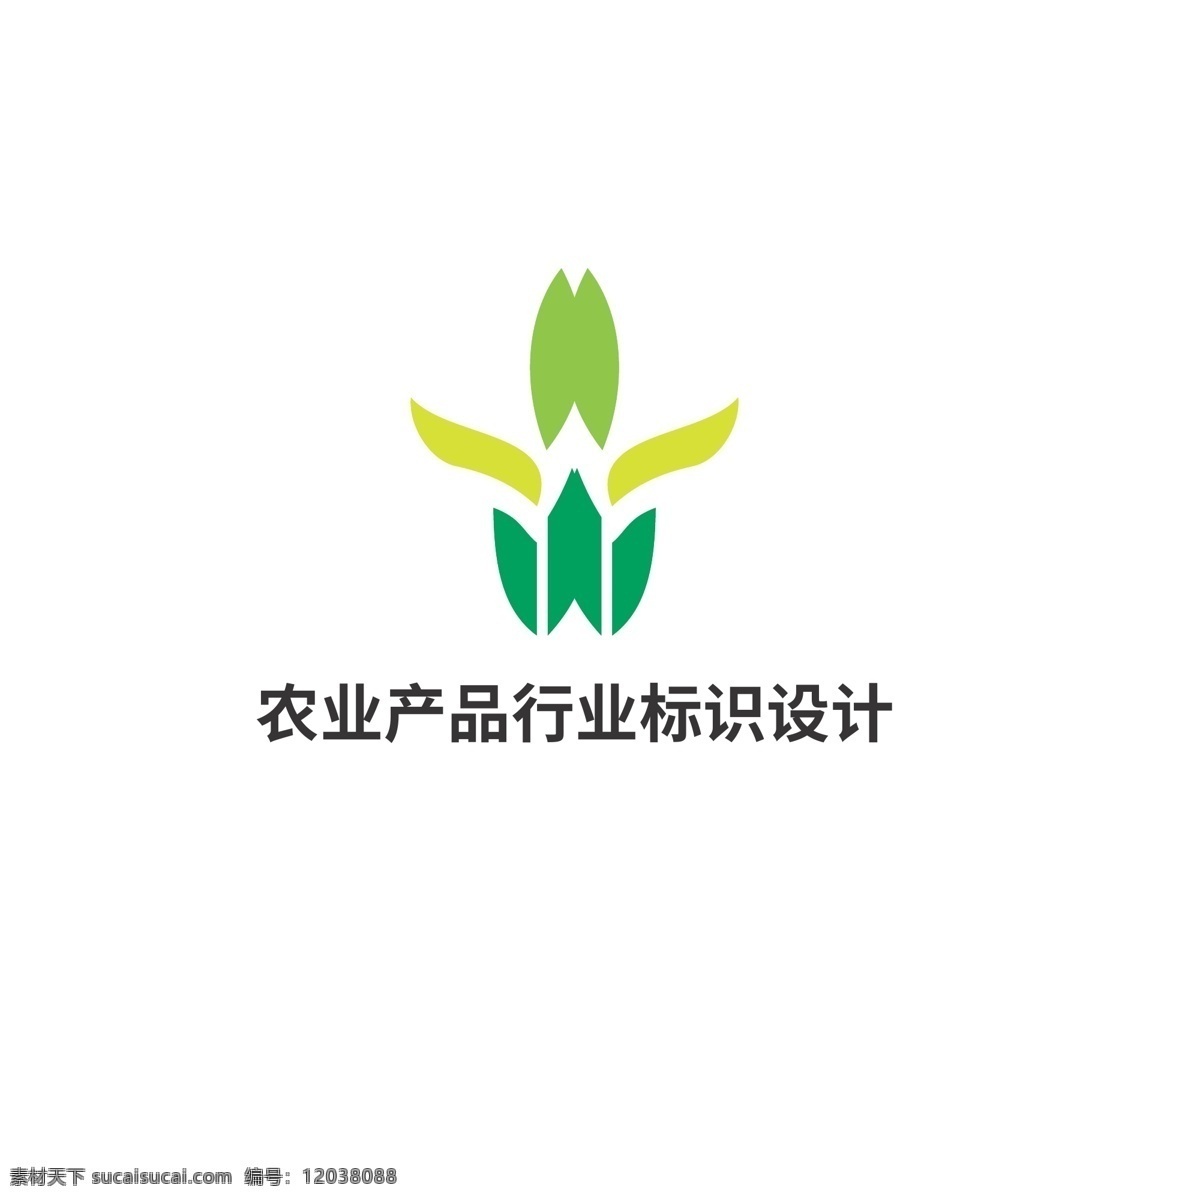 农业 产品 行业 标识设计 标识 植物 叶子